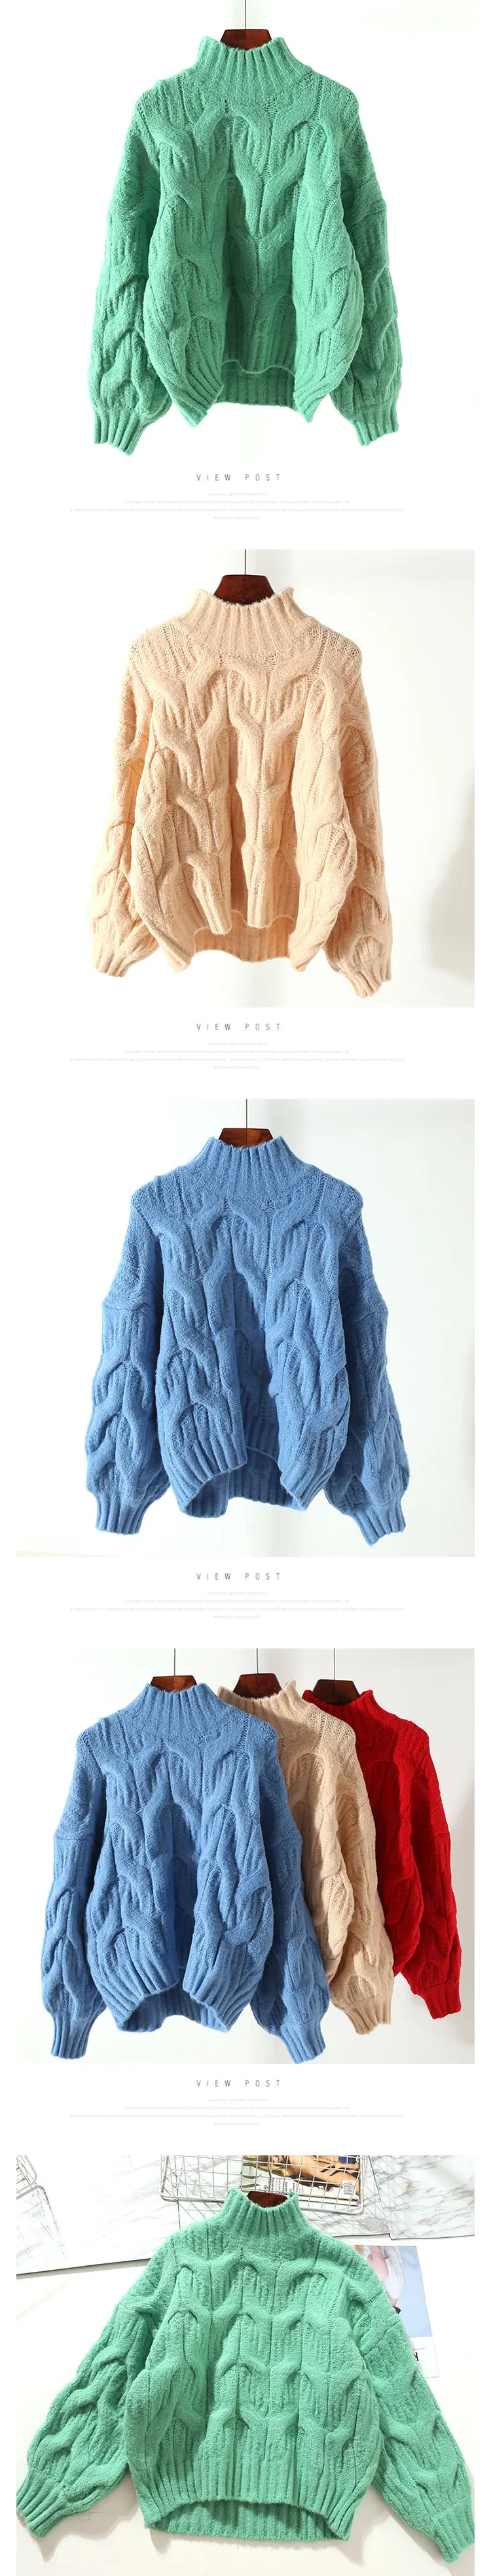 Новинка весны 2018 года Женский Блузки для малышек пуловеры женщин для Фонари рукавом Винтаж твист свитер дамы свободные грубой пальт